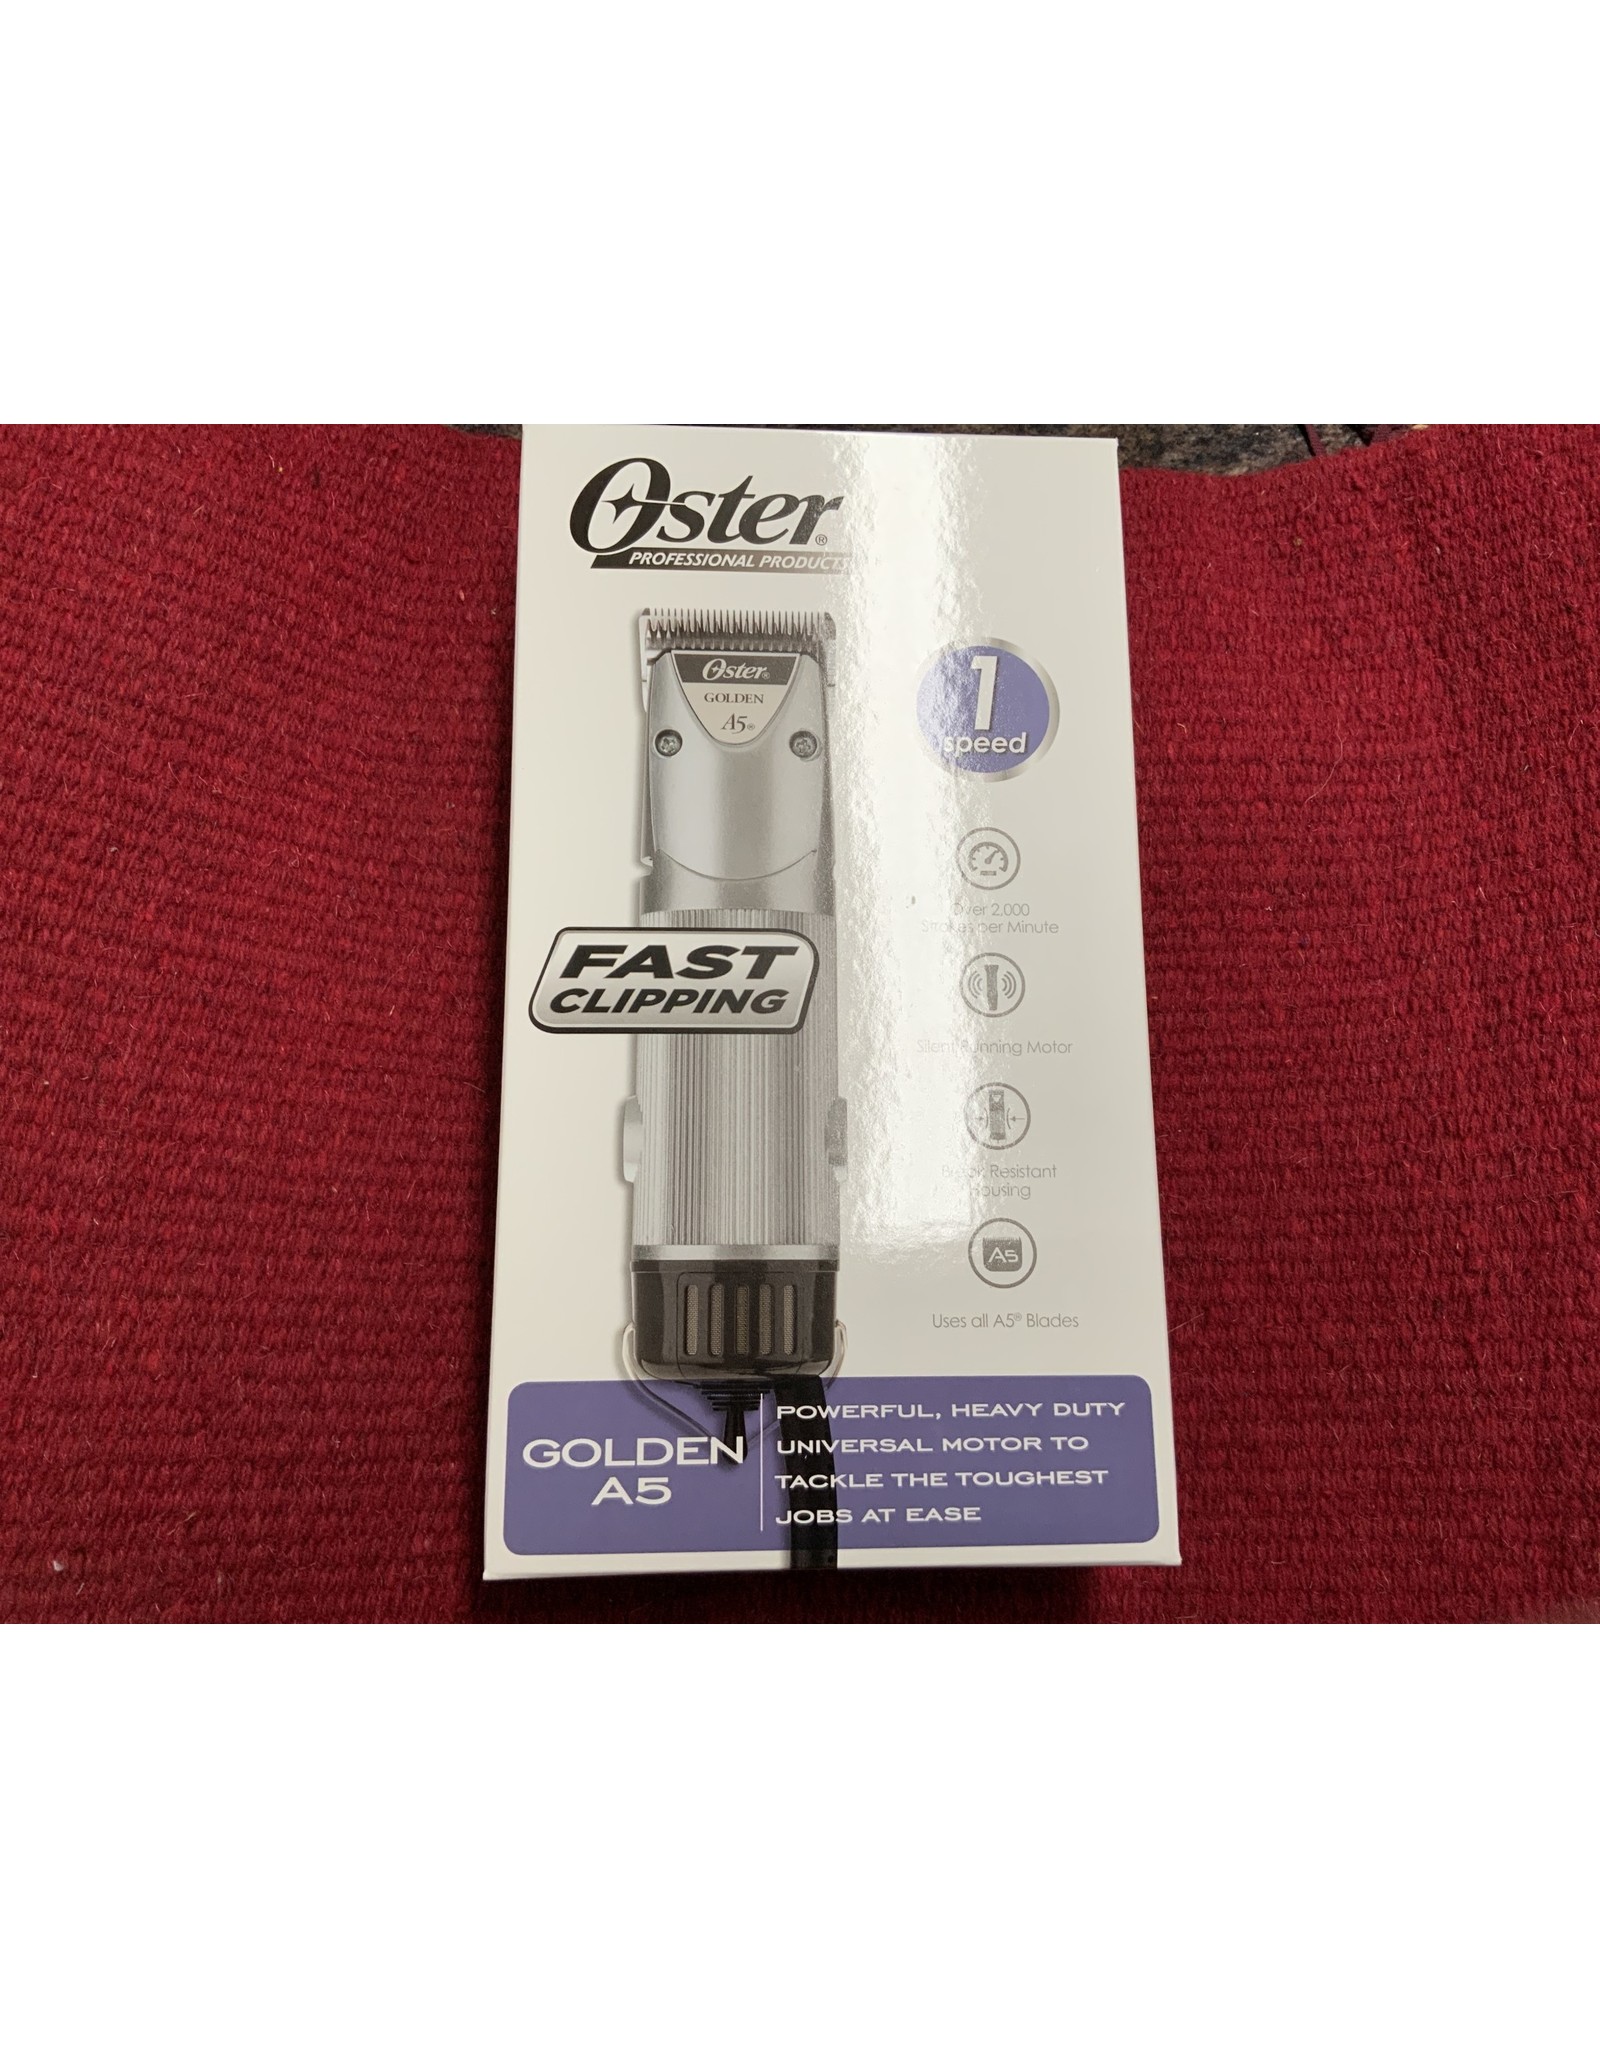 Oster - Golden A5 - 1 speed clipper D43-45000